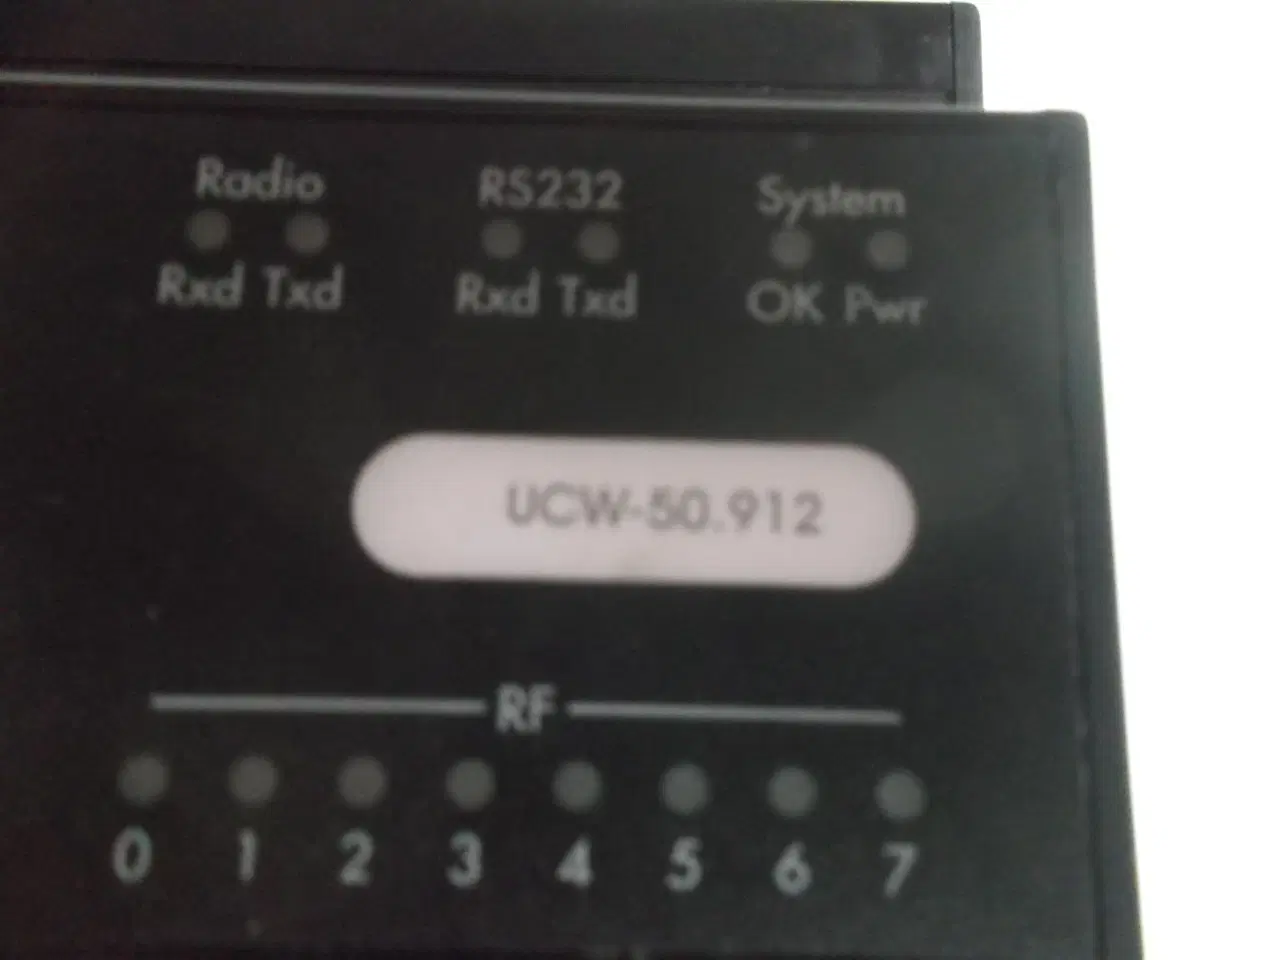 Billede 4 - Brodersen Controls radio modul UCW-50.912